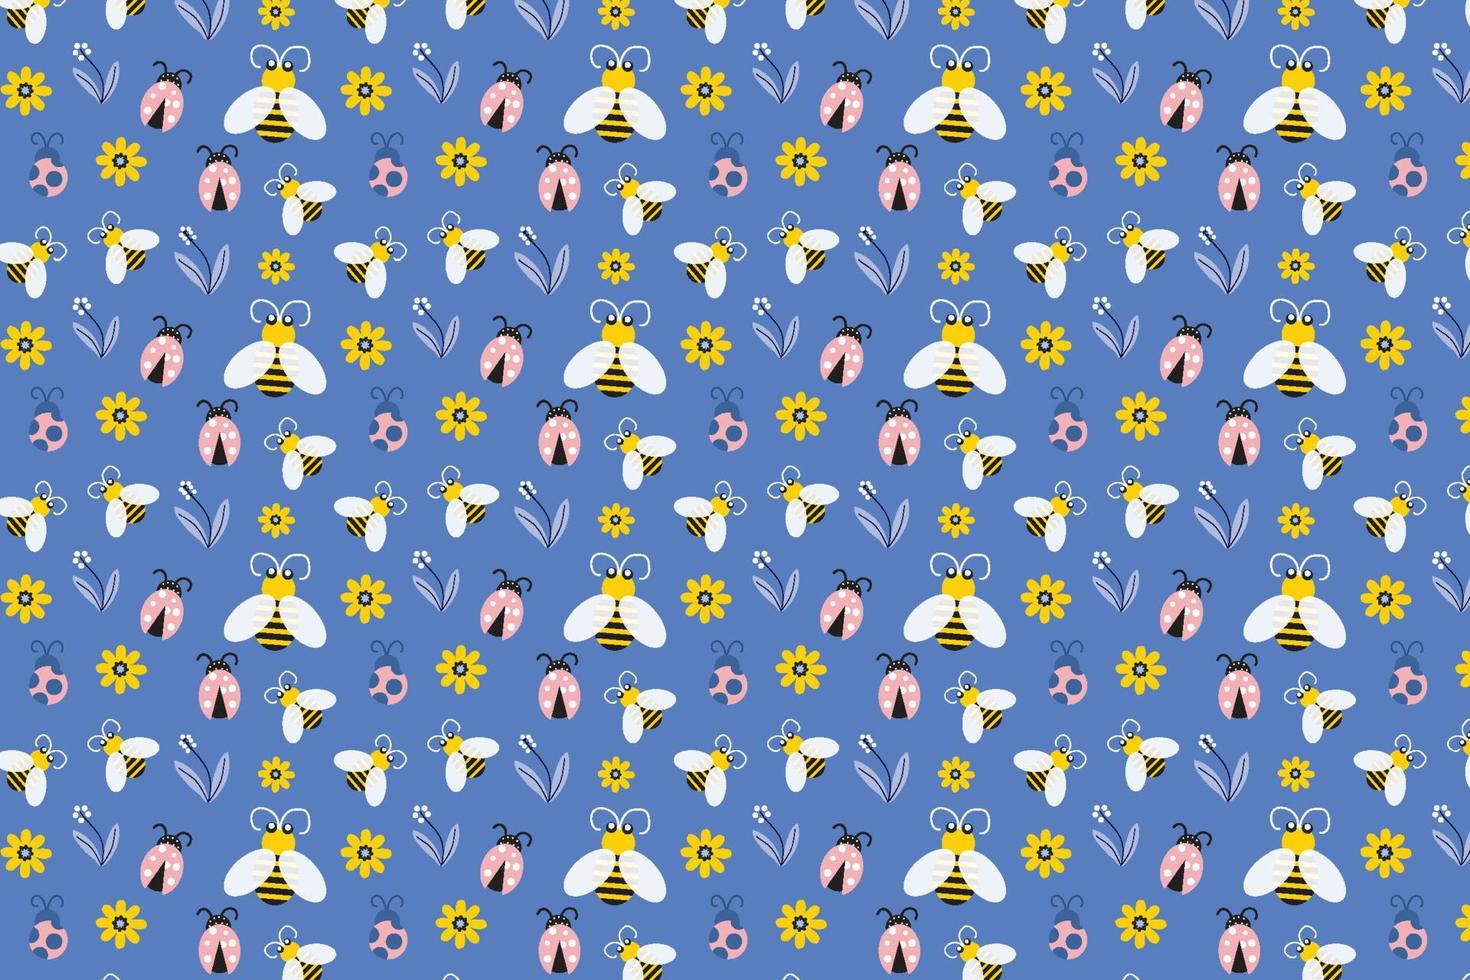 hermosa decoración floral sobre un fondo azul. diseño abstracto de patrones  de insectos con abejas y